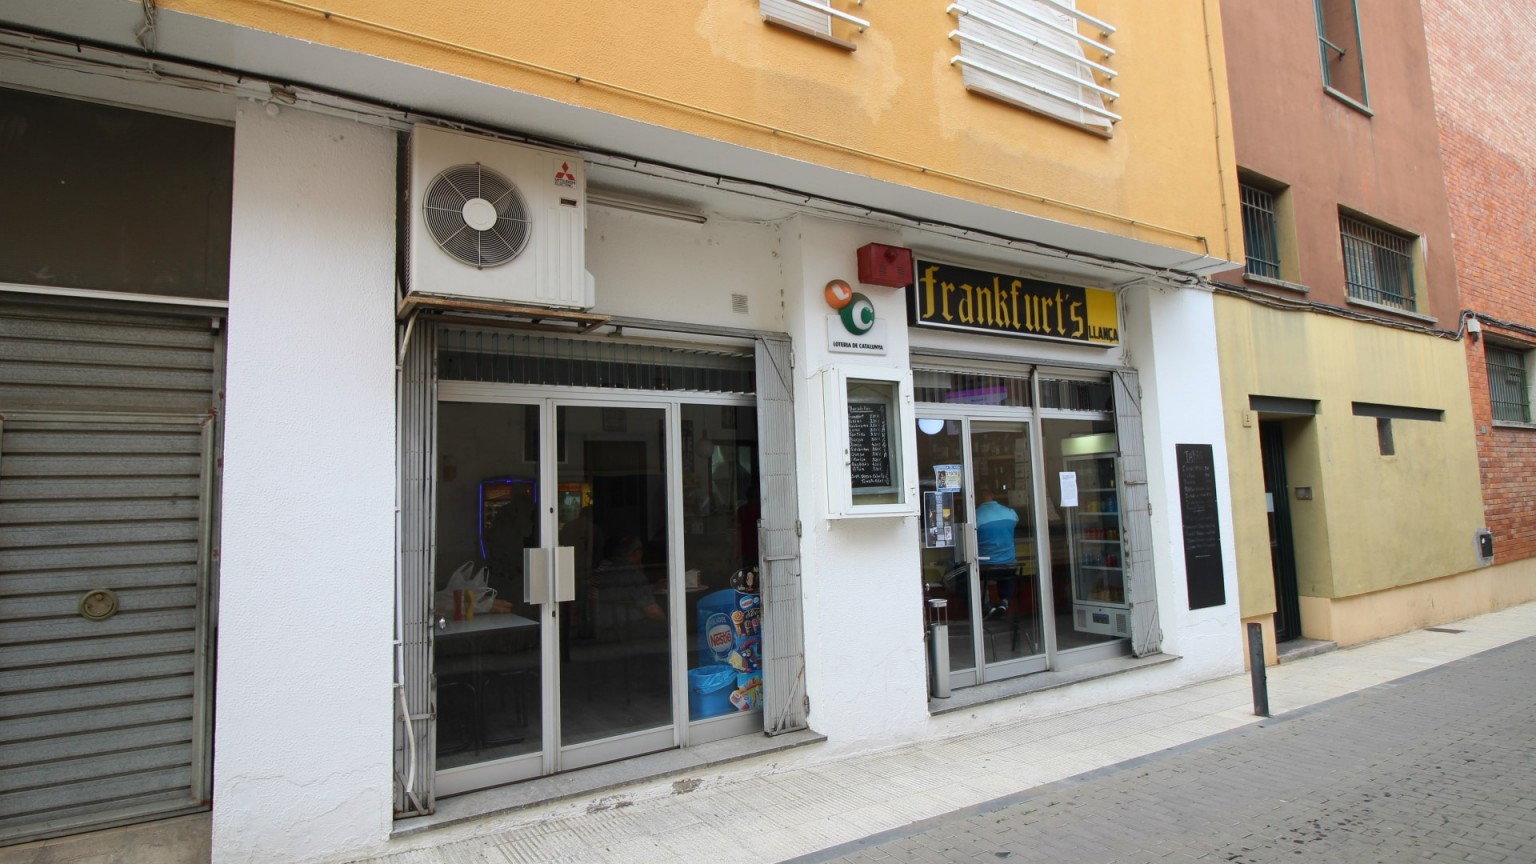 Local comercial en venta destinado a Bar en el centro de La Vila en pleno funcionamiento